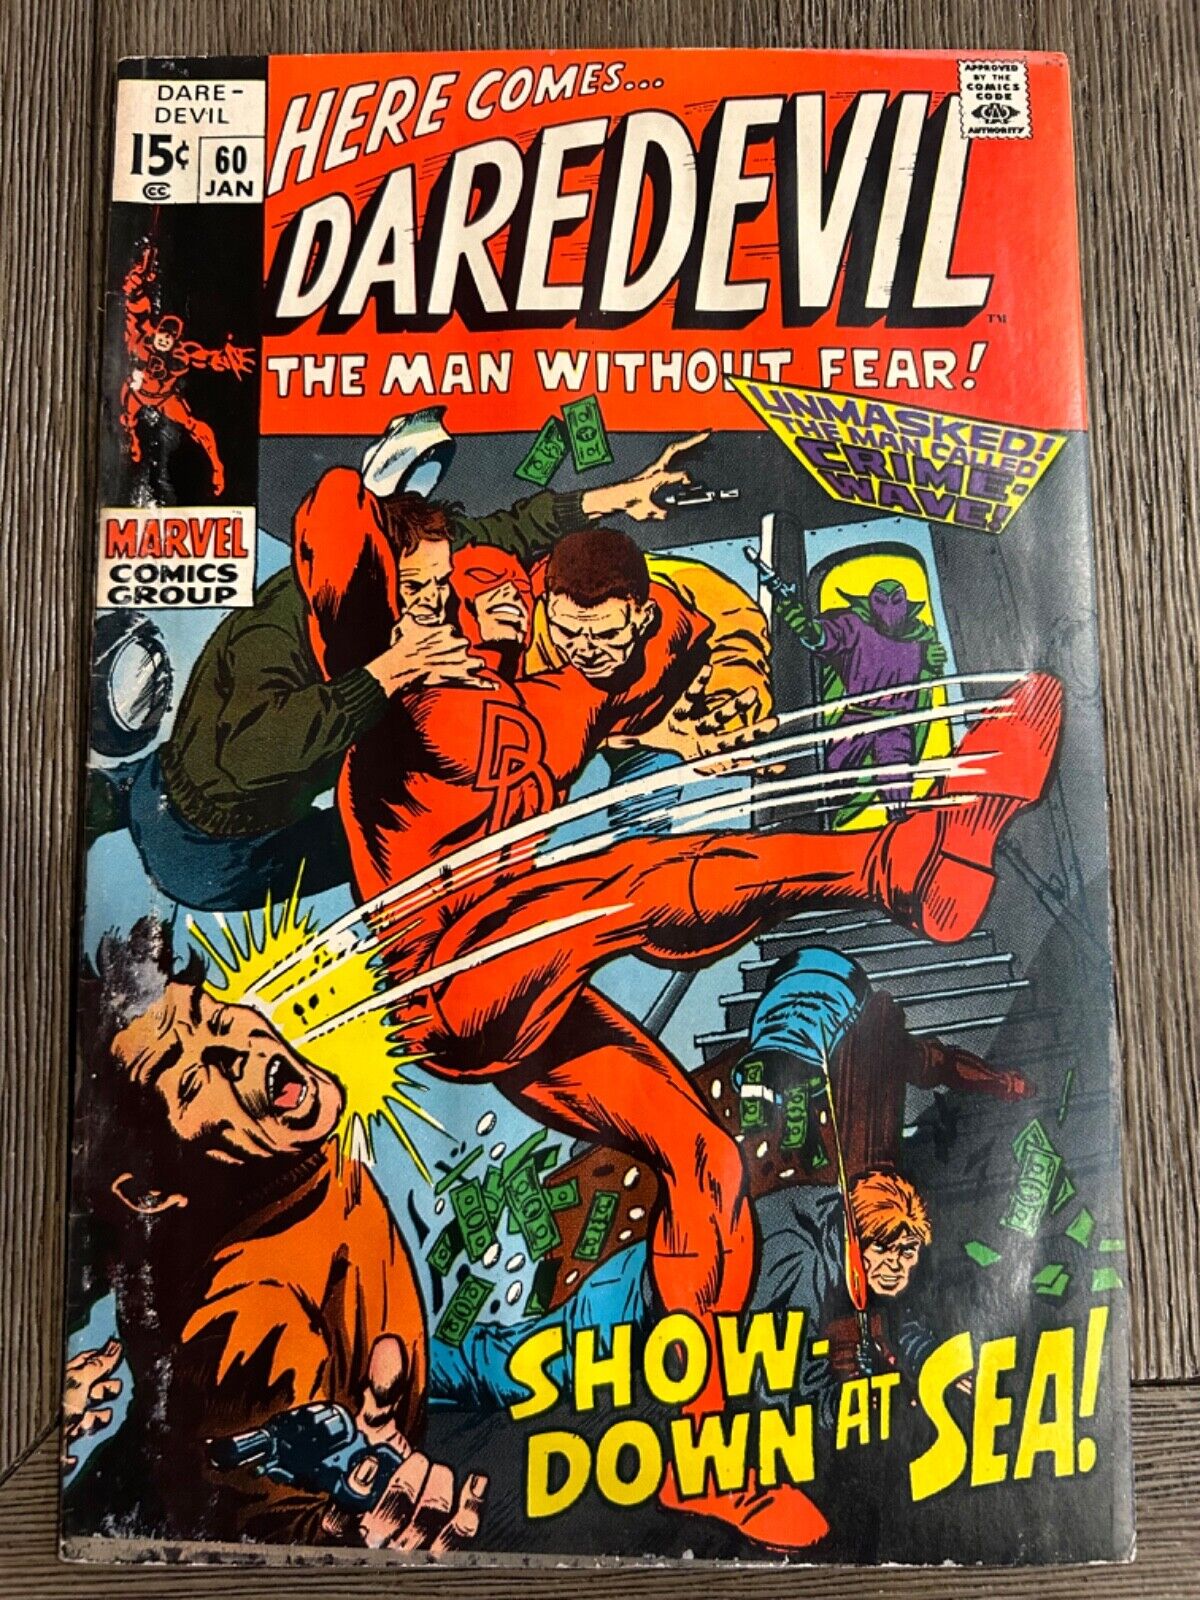 DAREDEVIL #60, Jan 1970, Marvel - I combine shipping